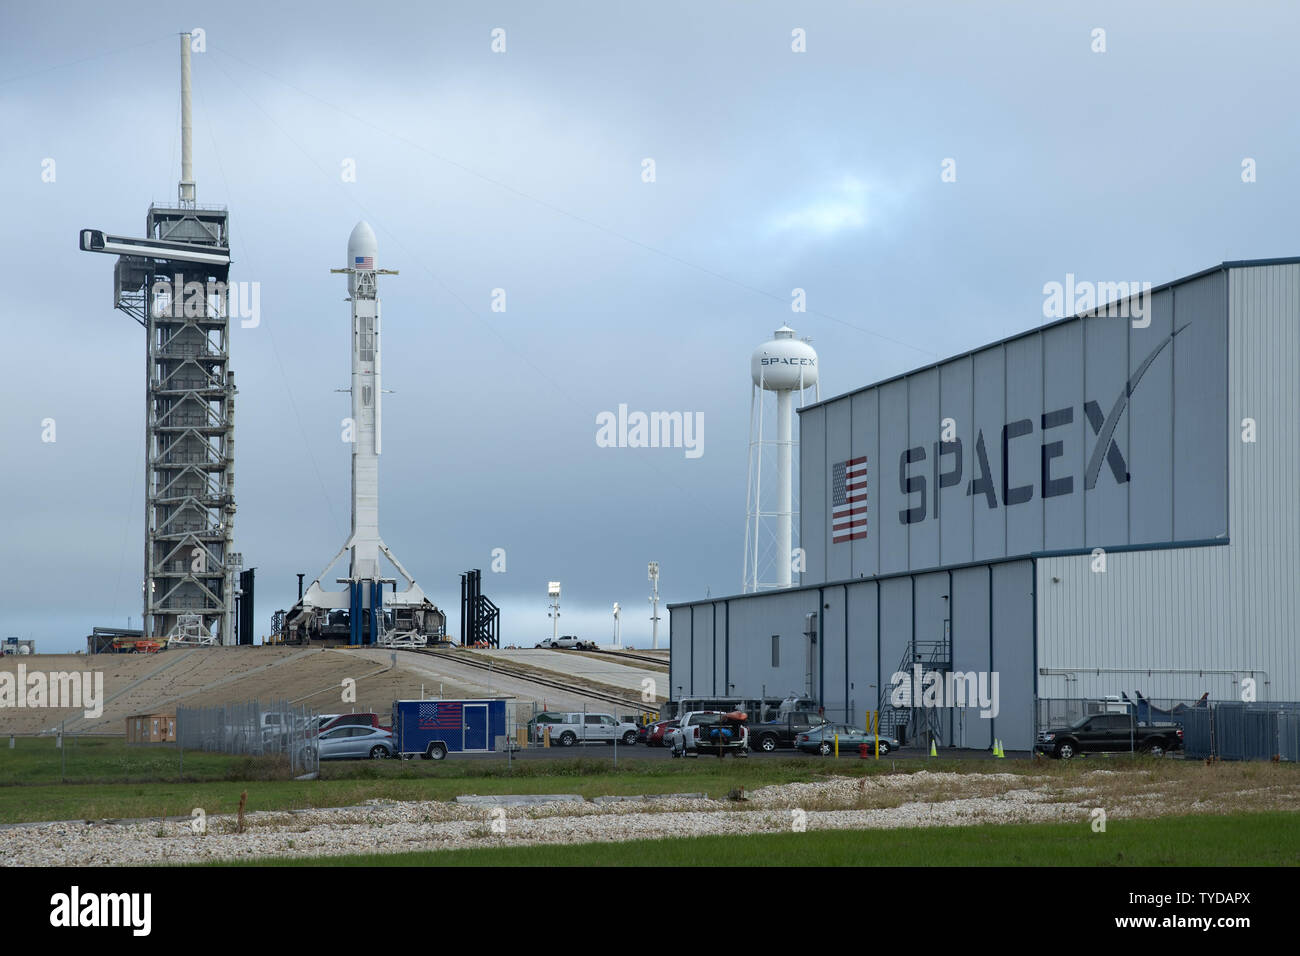 Elon Musk "paceX' è una delle società aerospaziali nella Florida Centrale il rafforzamento dell'economia lungo quello che la gente del posto chiama il ritmo "costa", in foto fatte Novembre 11, 2018. SpaceX conduce il lancio e il rinnovo della sua dei razzi lanciati dal centro spaziale e di Cape Canaveral. Foto di Joe Marino/UPI Foto Stock